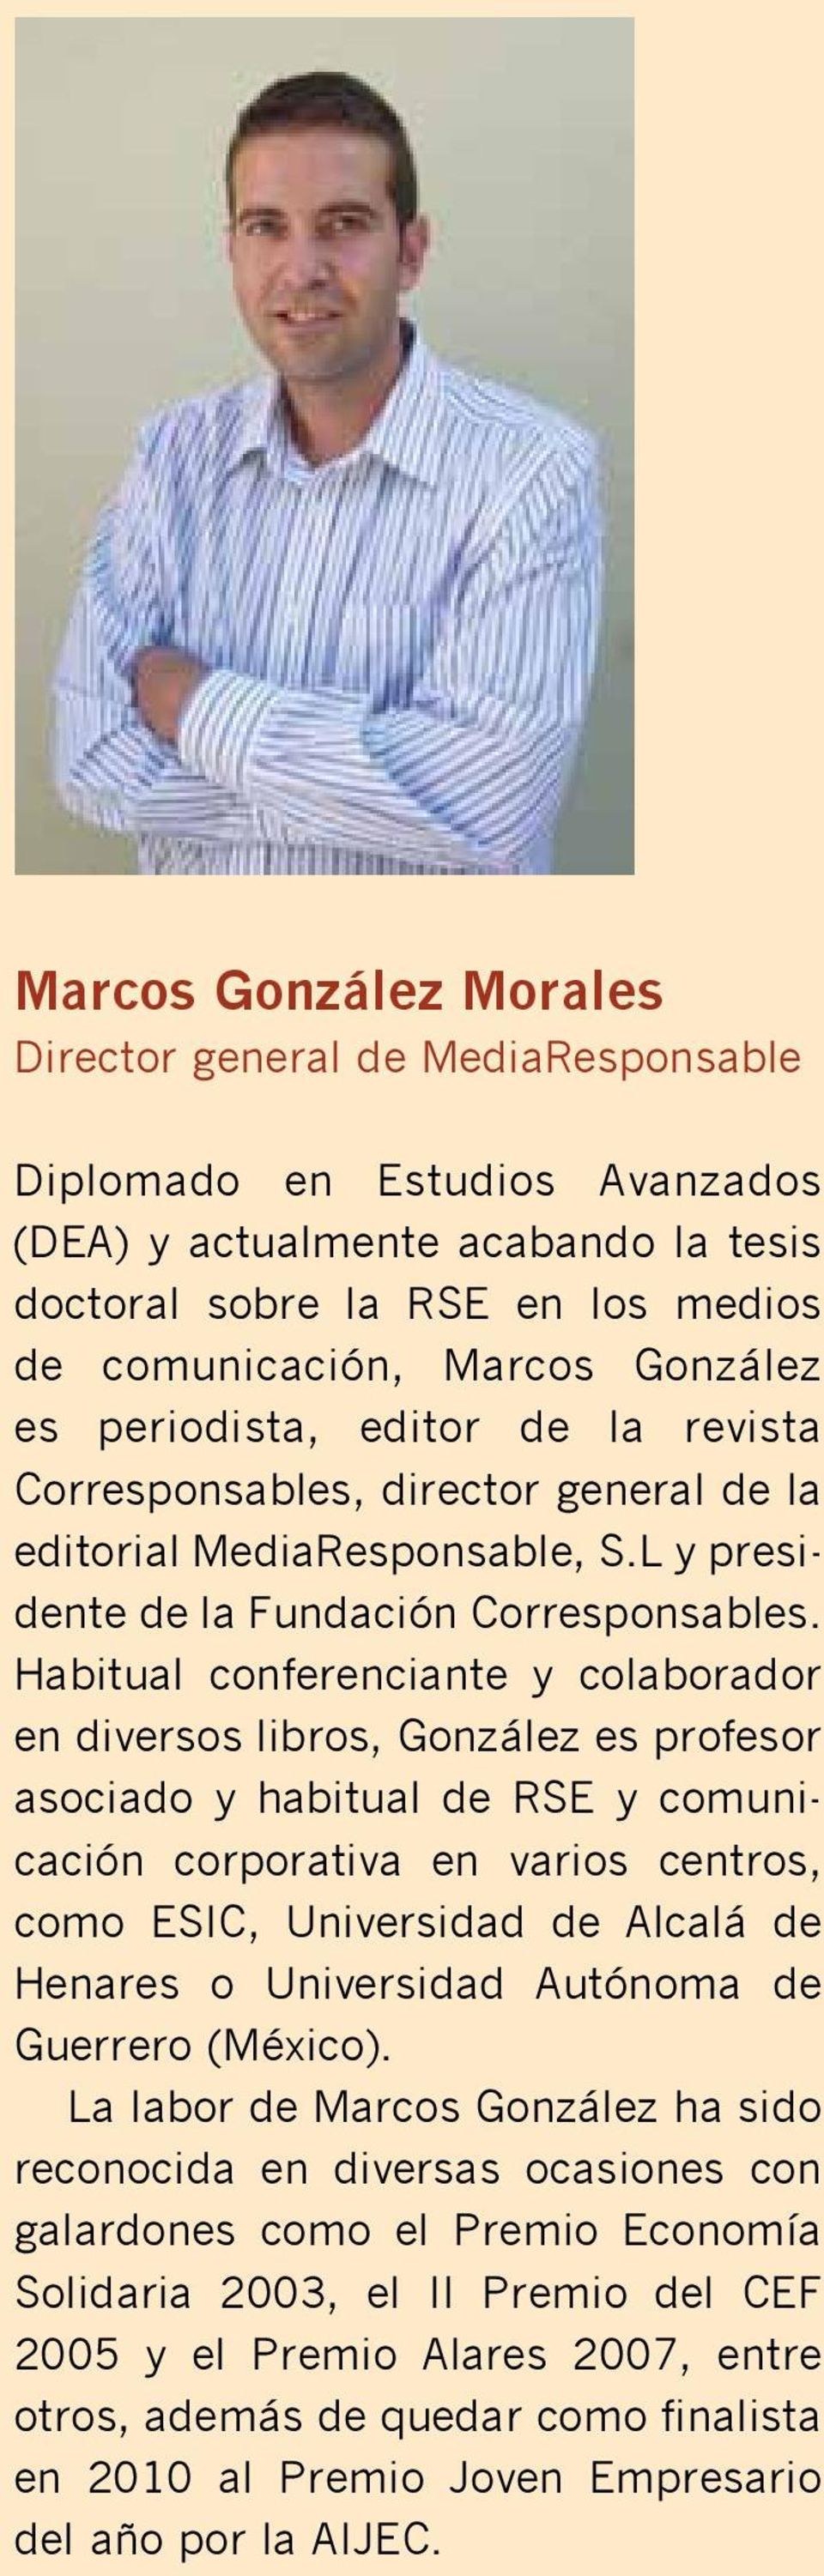 Habitual conferenciante y colaborador en diversos libros, González es profesor asociado y habitual de RSE y comunicación corporativa en varios centros, como ESIC, Universidad de Alcalá de Henares o